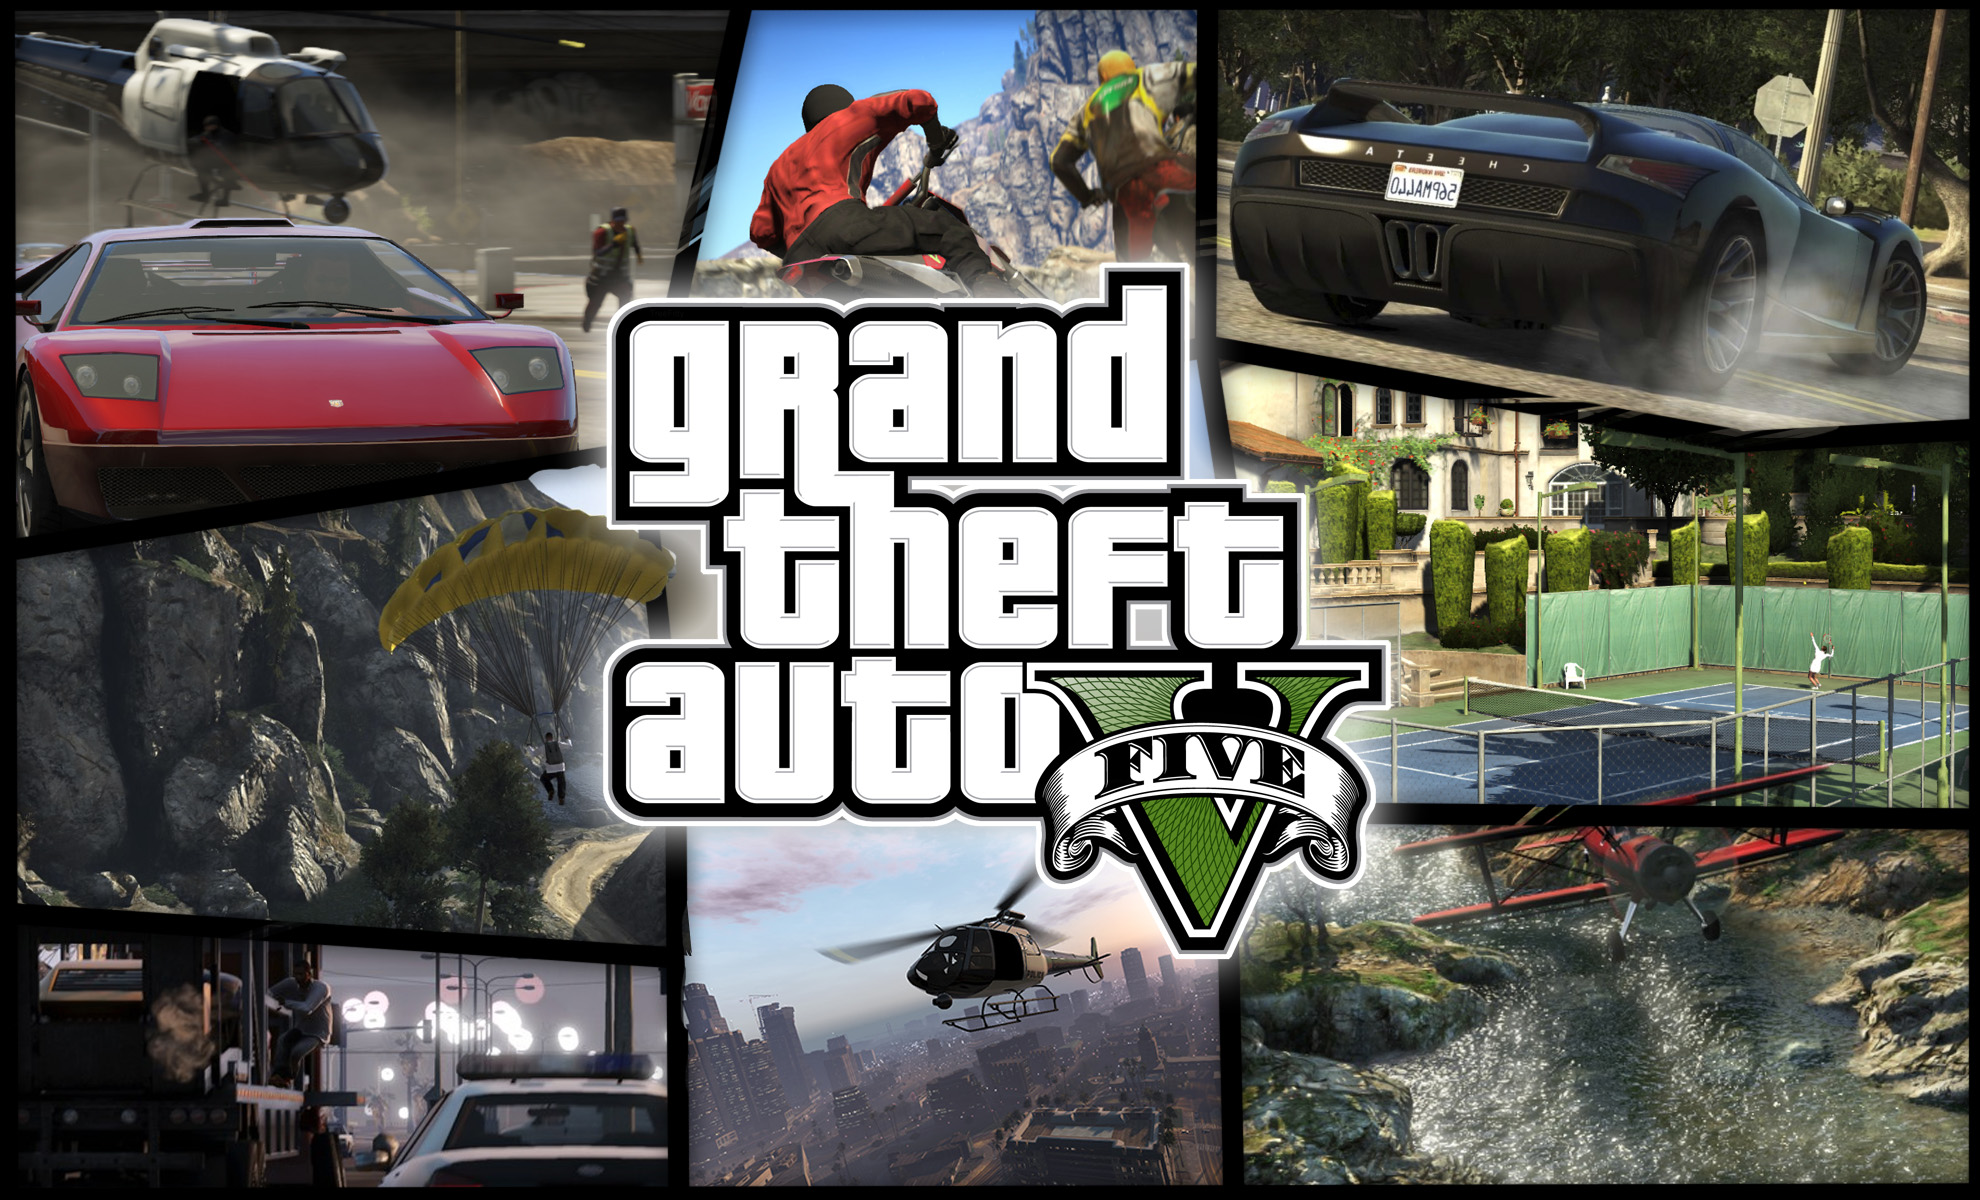 Grand auto adventure. Grand Theft auto v (Xbox 360). Обои ГТА 5. ГТА 5 Grand Theft auto v. ГТА 5 на Xbox 360.